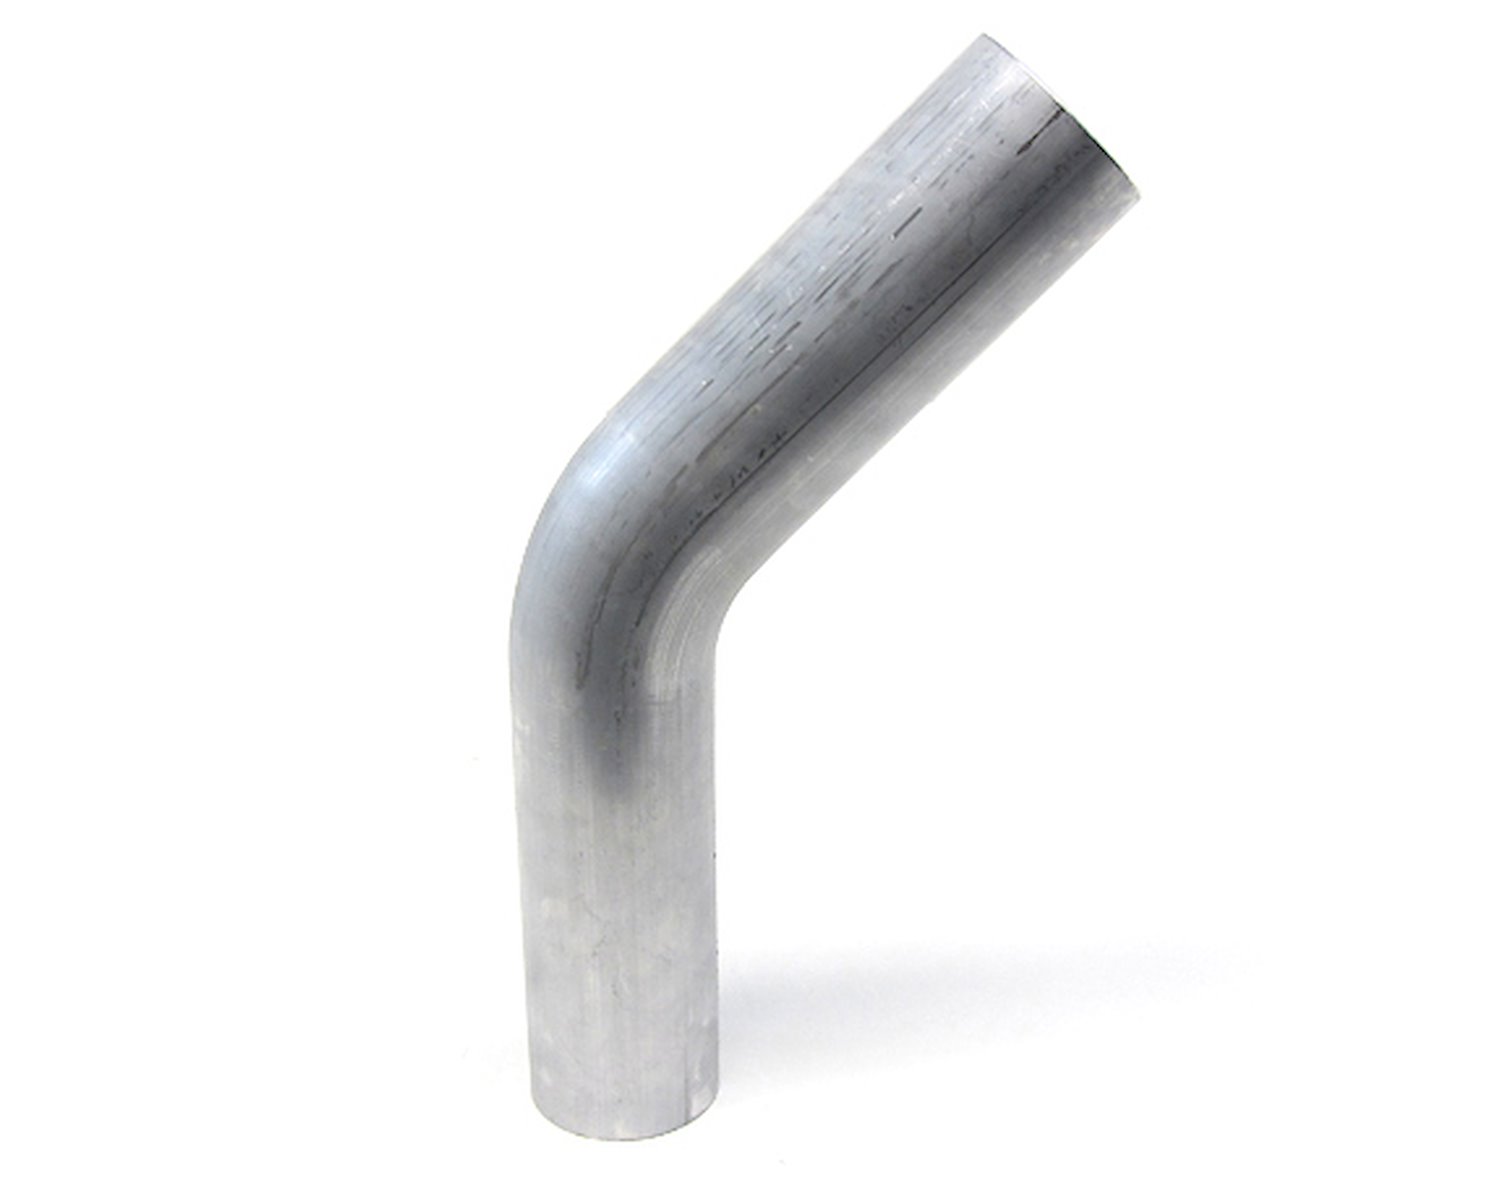 AT45-225-CLR-225 Aluminum Elbow Tube, 6061 Aluminum, 45-Degree Bend Elbow Tubing, 2-1/4 in. OD, Tight Radius, 2-1/4 in. CLR